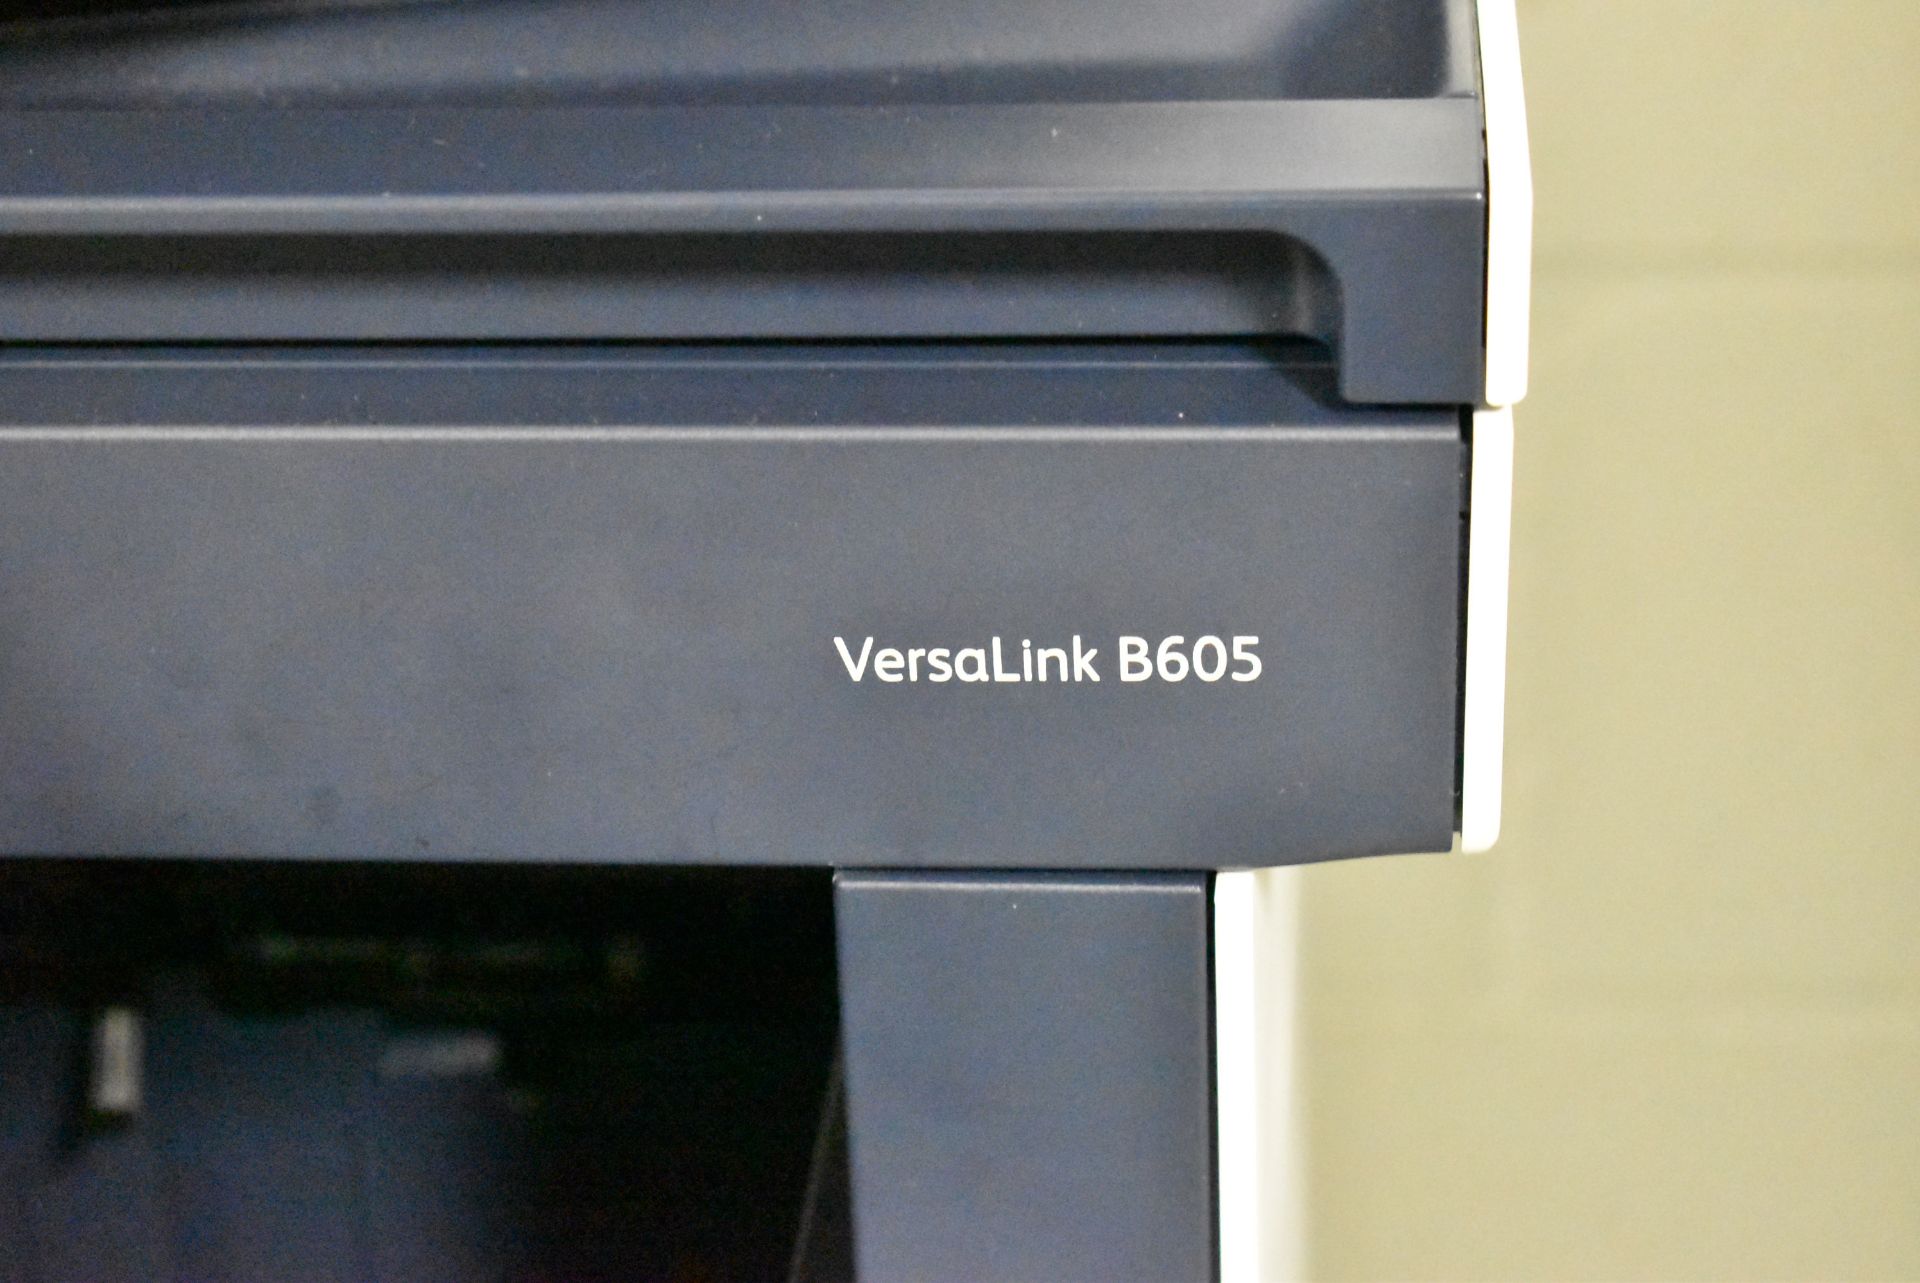 XEROX VERSALINK B605 MULTIFUNCTION PRINTER/SCANNER, S/N N/A - Image 2 of 3